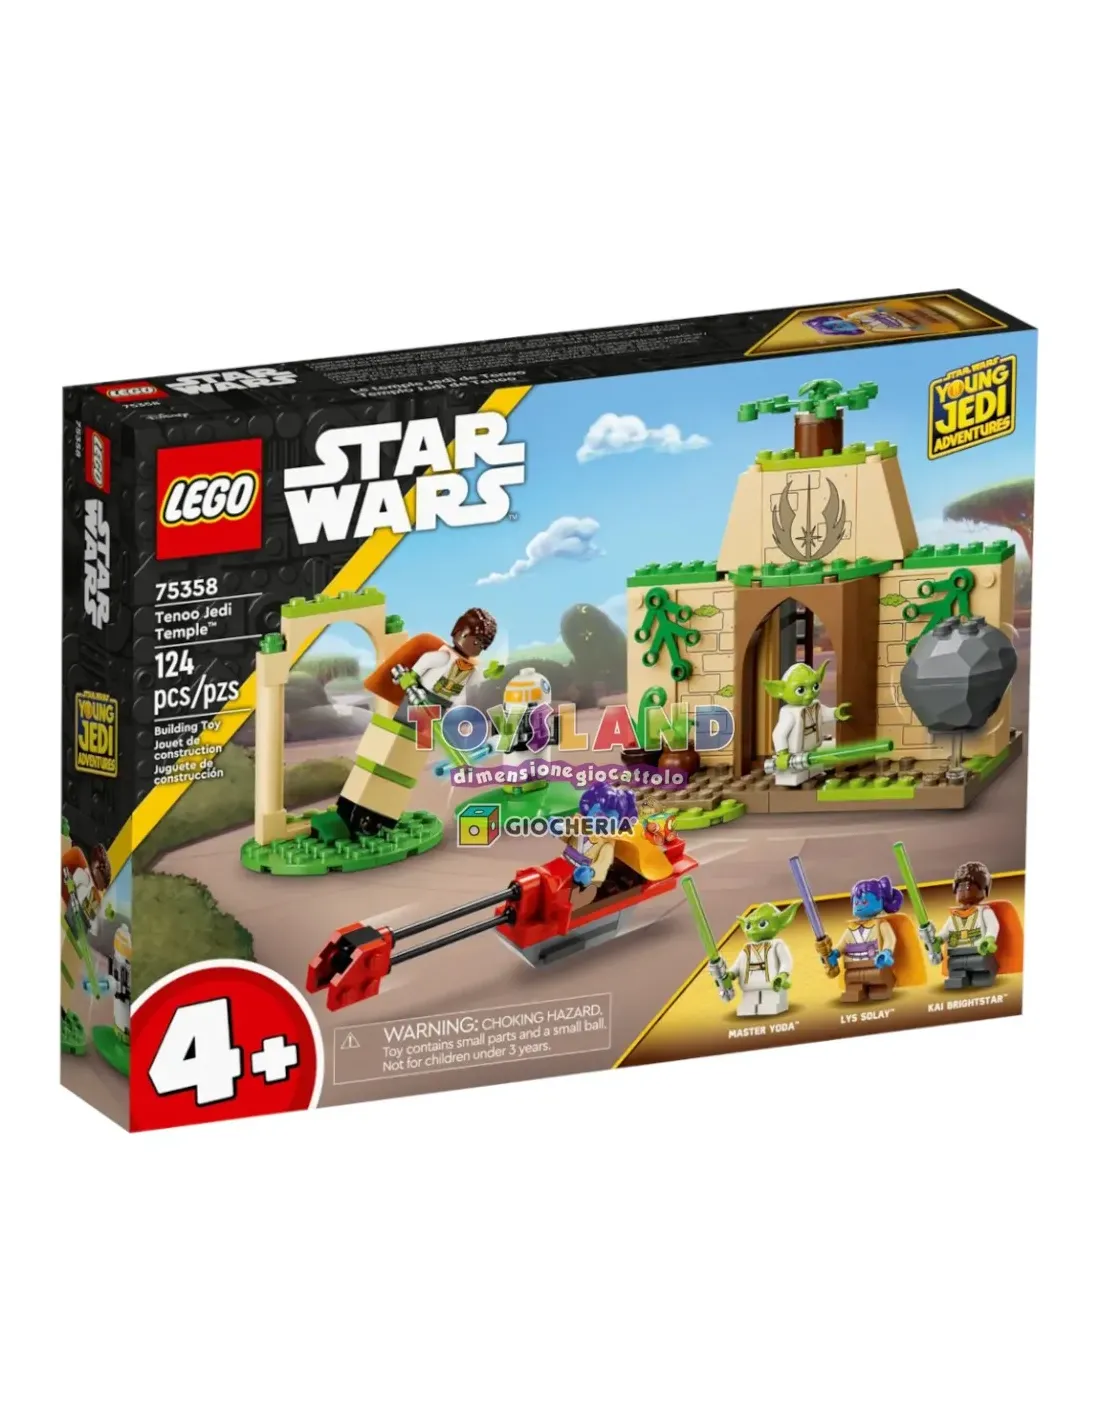 LEGO 31086 - Aereo Futuristico a 19,99 €